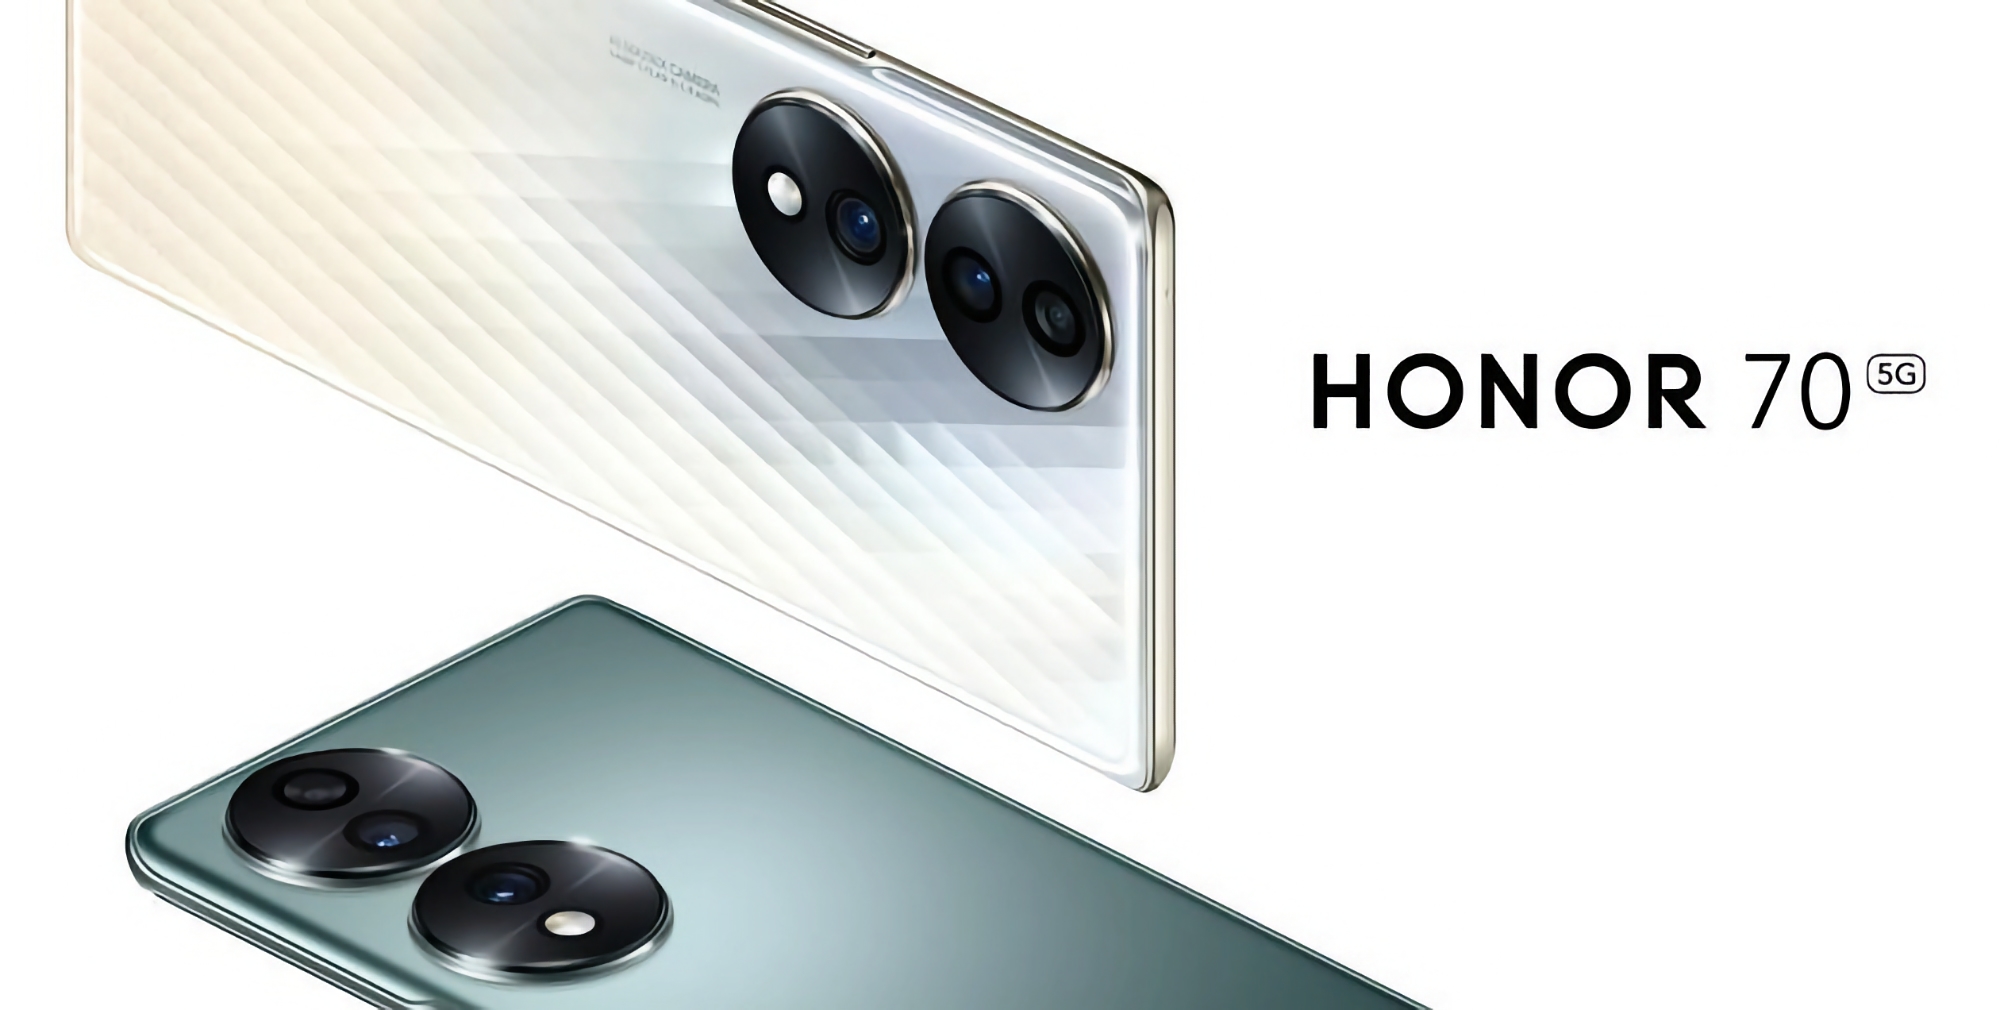 Le Honor 70, équipé d'une puce Snapdragon 778G+, d'un écran AMOLED 120Hz et d'un appareil photo de 54 MP, est disponible au prix de 399 euros (50 euros de réduction)